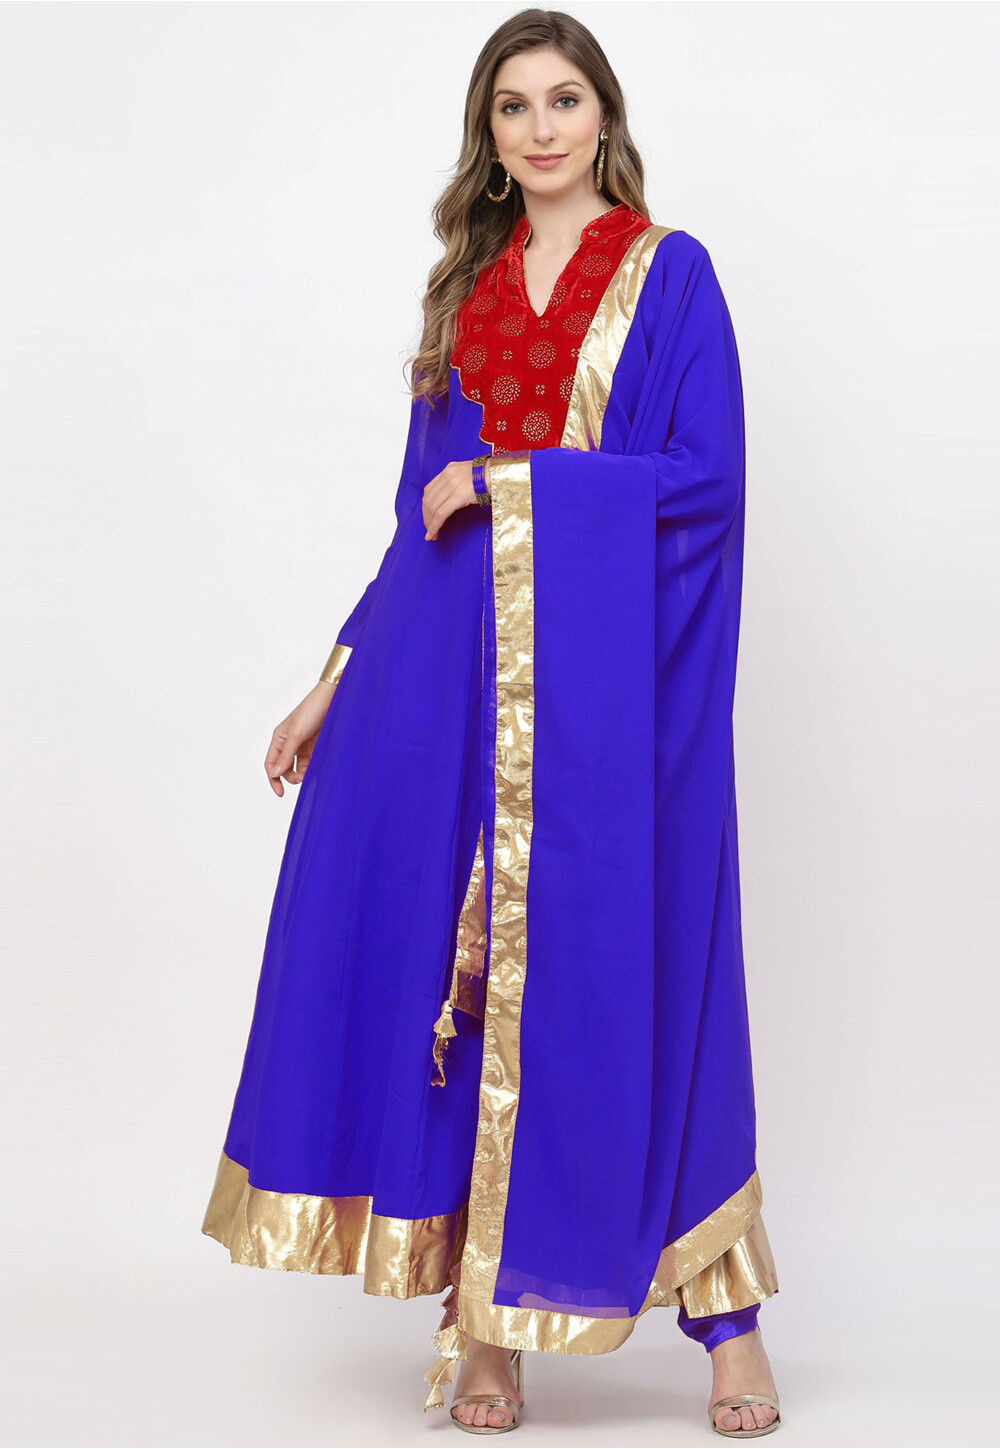 Navy Blue Color Function Wear Embroidered Net Fabric Designer Anarkali Suit  | Anarkali dress, Designer anarkali, Indian dresses